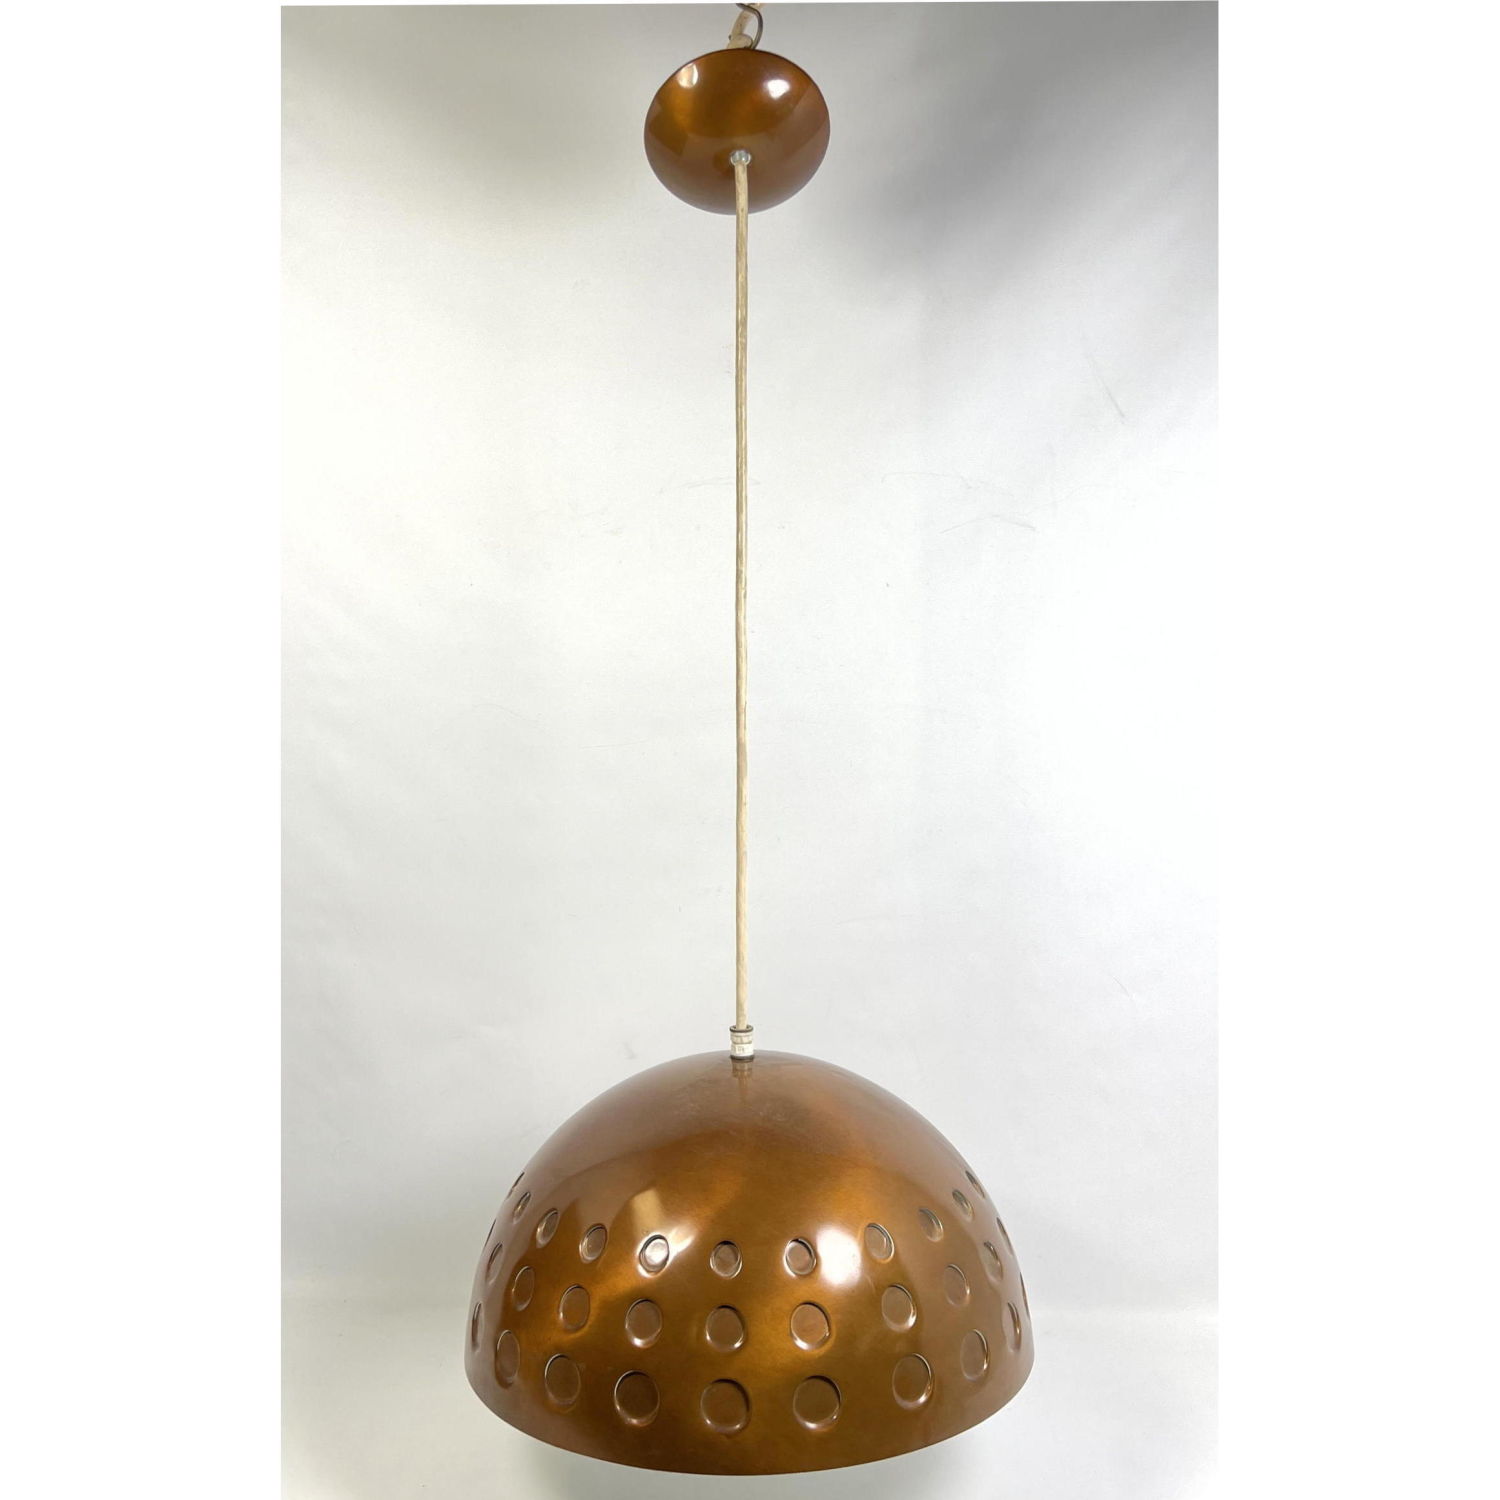 Copper Tone Dome Pendant Lamp Chandelier  2b94d7